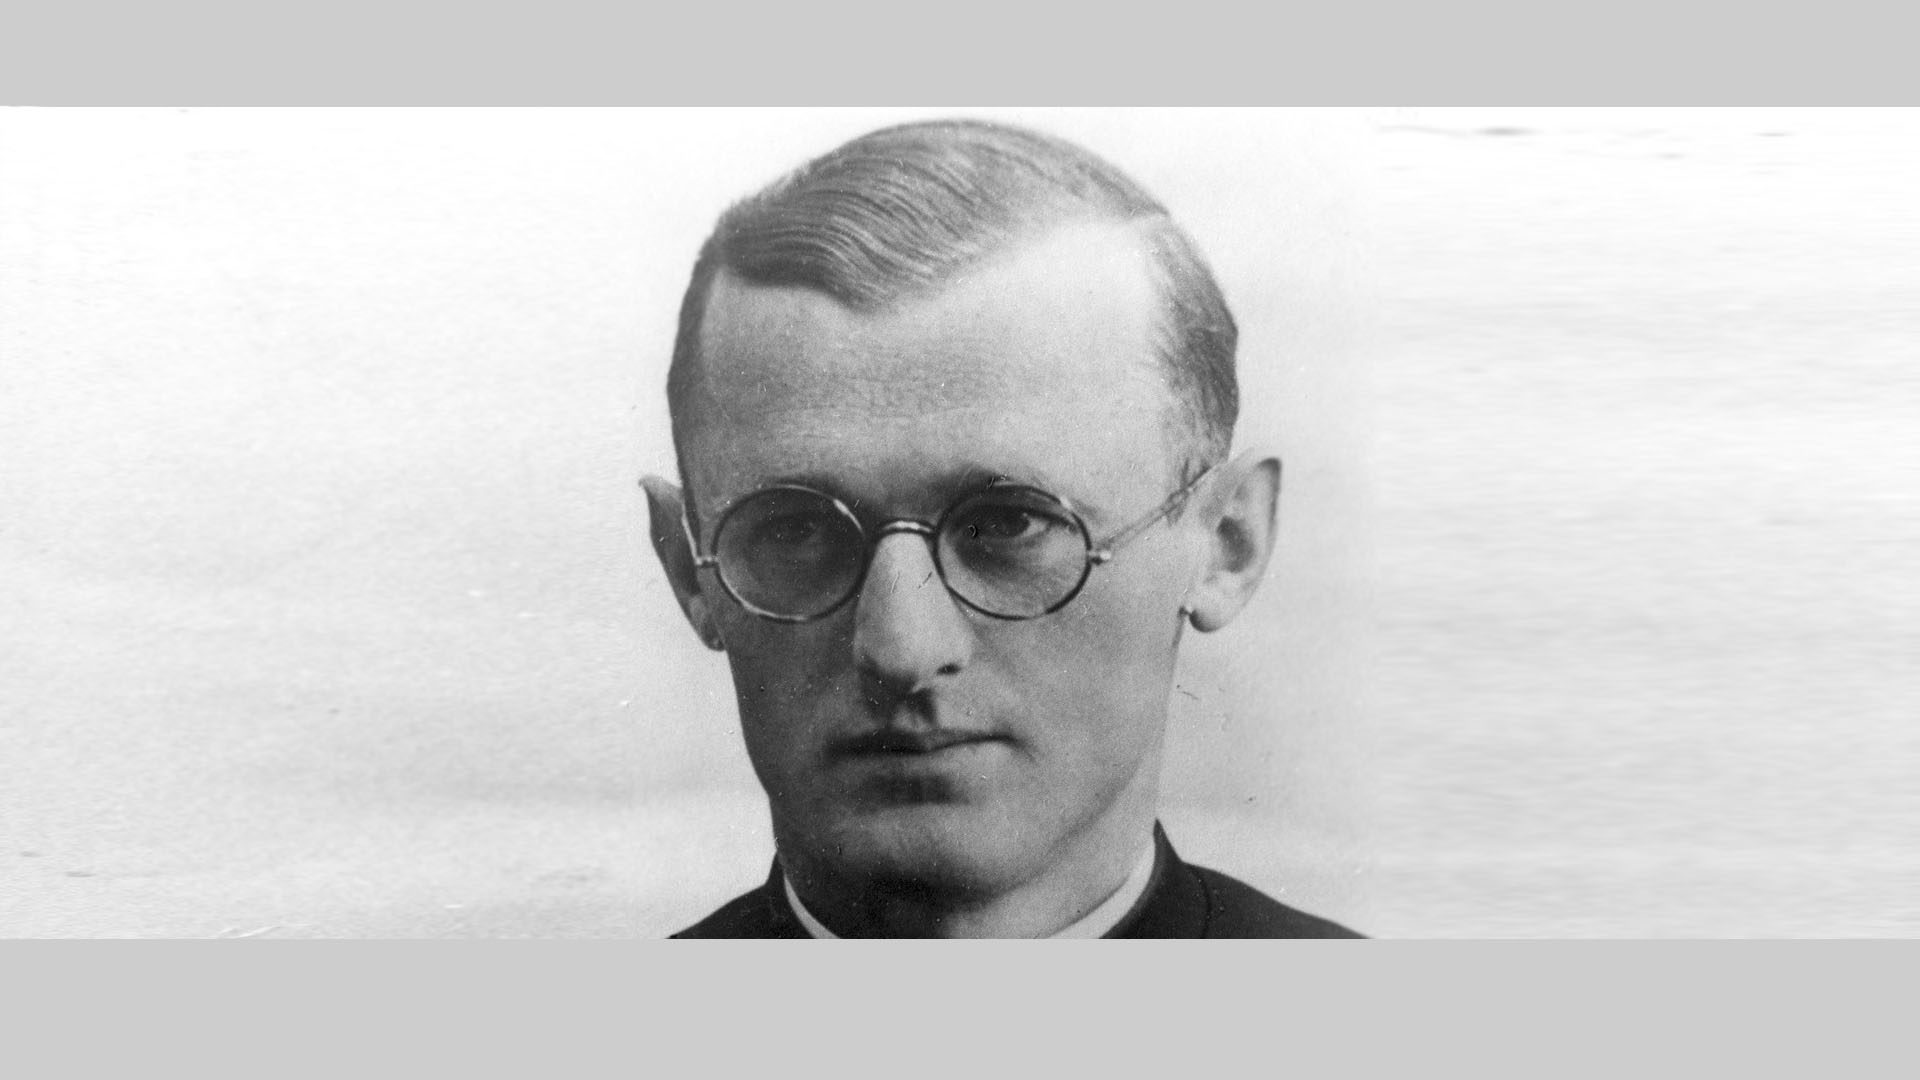 Le Père Engelmar Unzeitig, surnommée l'Ange de Dachau, est mort en martyr au camp de Dachau en 1944. (Photo: Wikimedia)